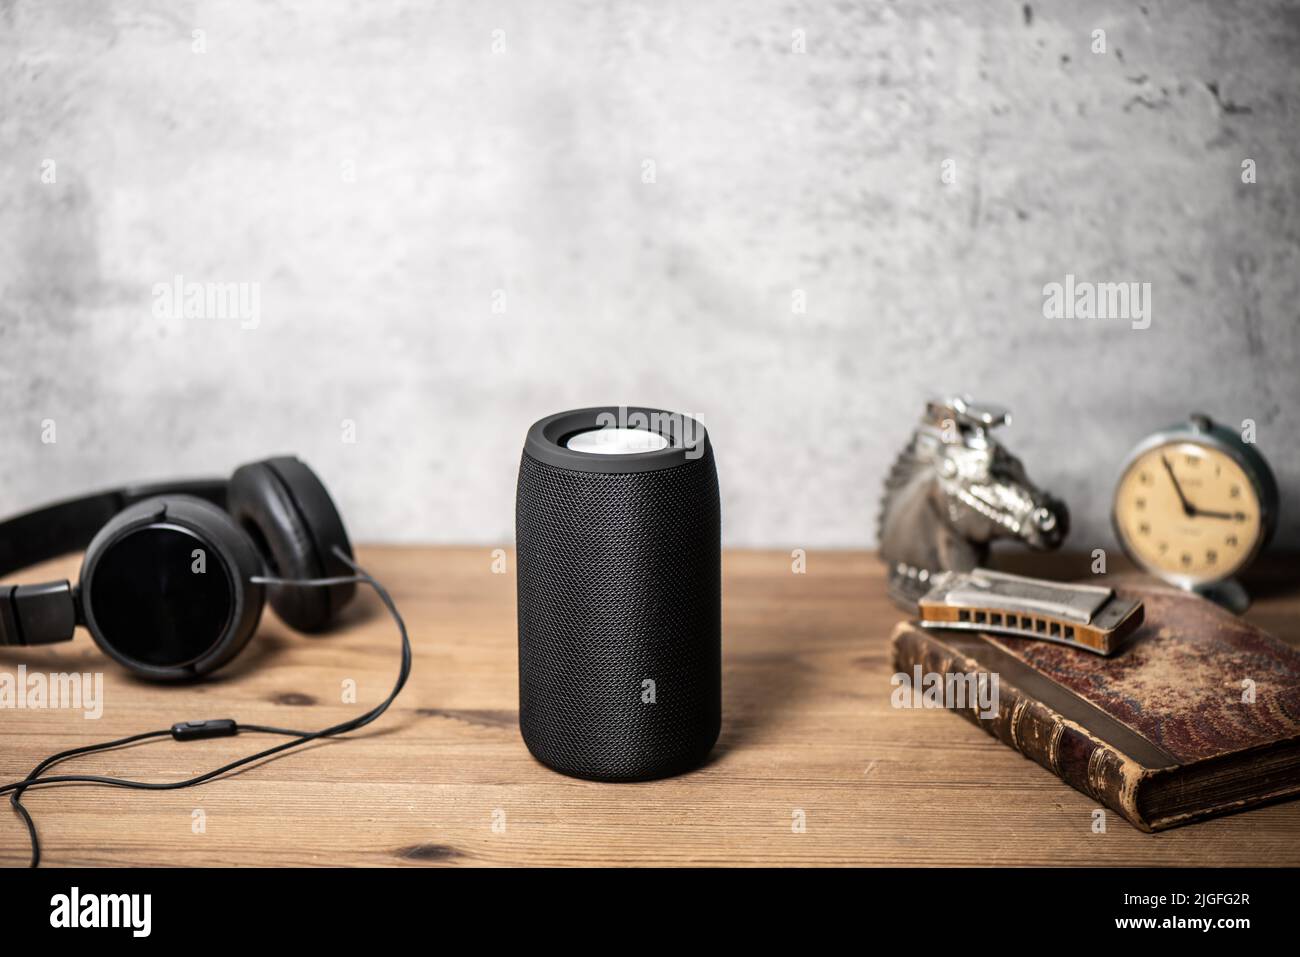 mini wireless portable speaker for music listening. Stock Photo